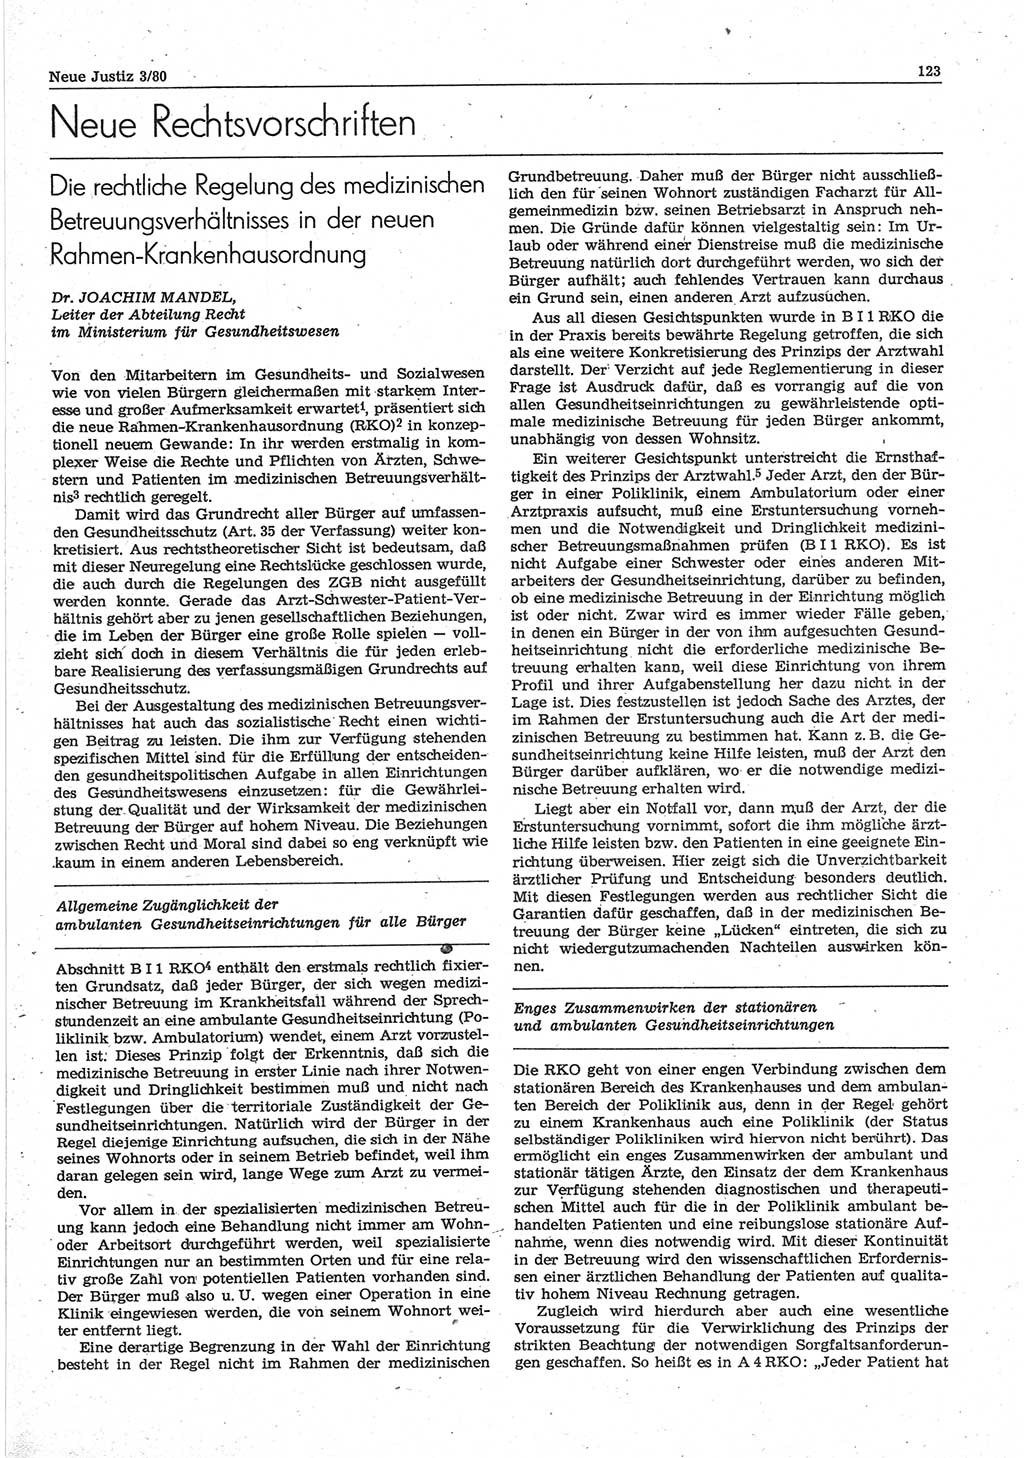 Neue Justiz (NJ), Zeitschrift für sozialistisches Recht und Gesetzlichkeit [Deutsche Demokratische Republik (DDR)], 34. Jahrgang 1980, Seite 123 (NJ DDR 1980, S. 123)